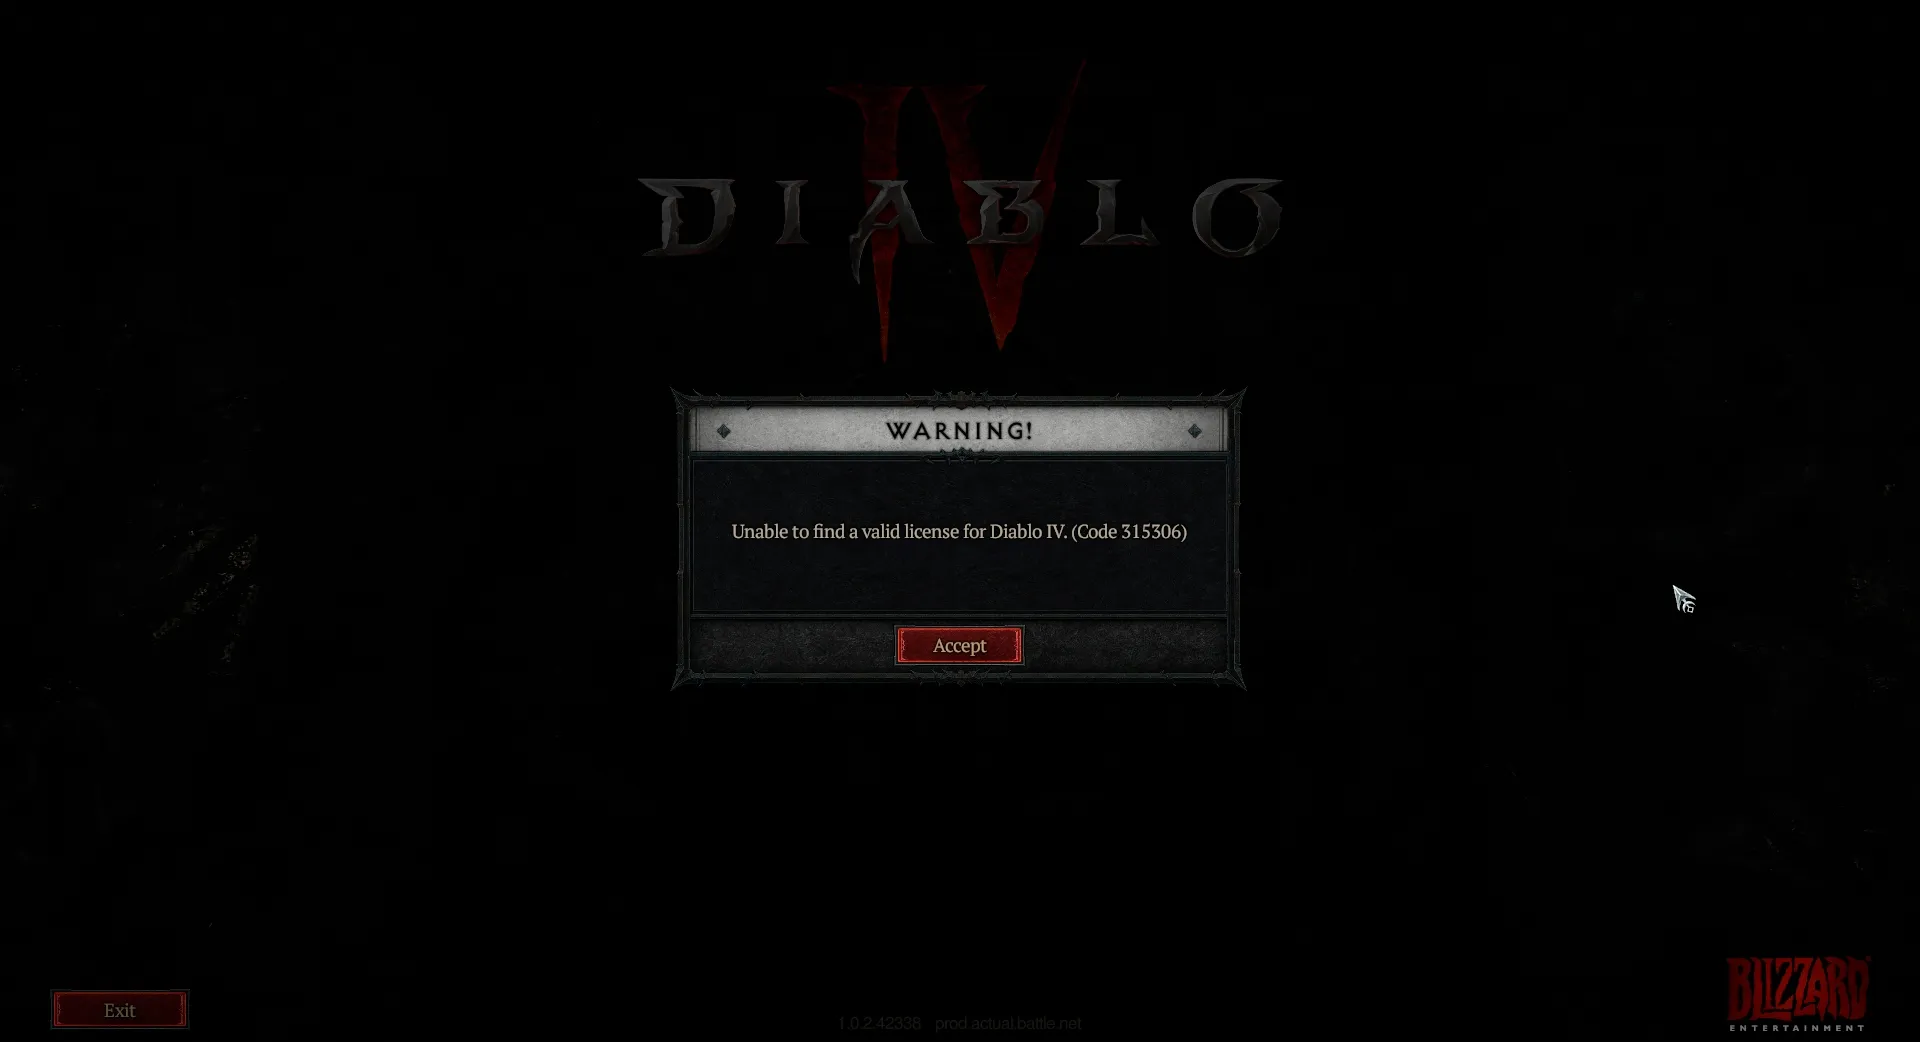 O imagine care arată codul de eroare 315306, care spune că Diablo 4 este